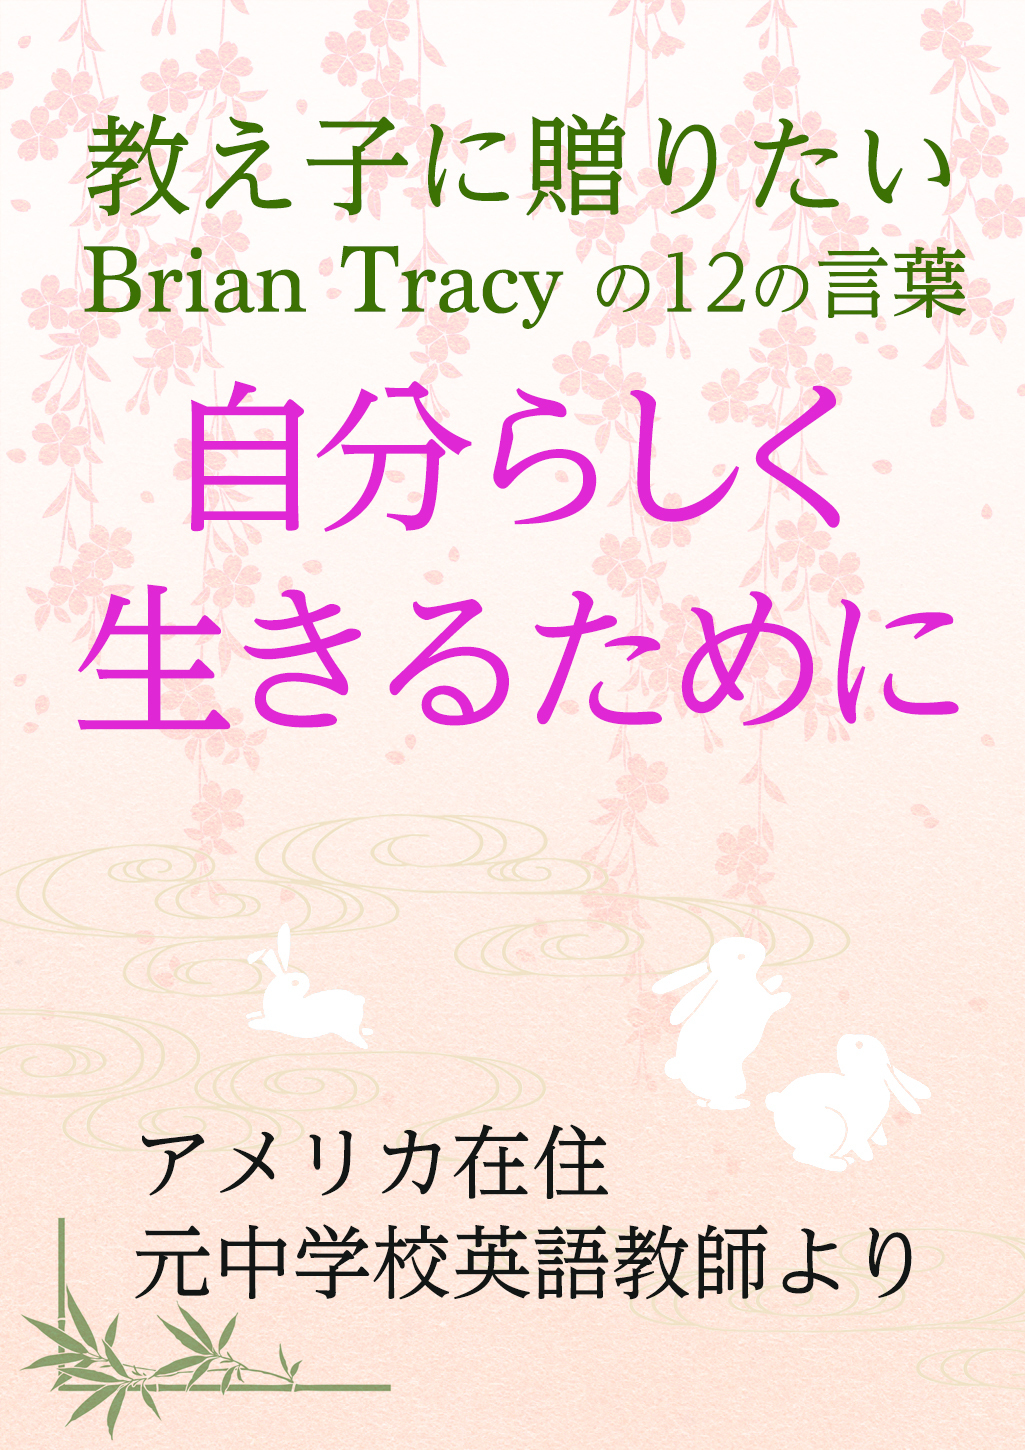 Brian Tracy の元気の出る言葉でパワーアップ アメリカの大和撫子 Brian Tracy と日本文化を愛するやまとなでしこ